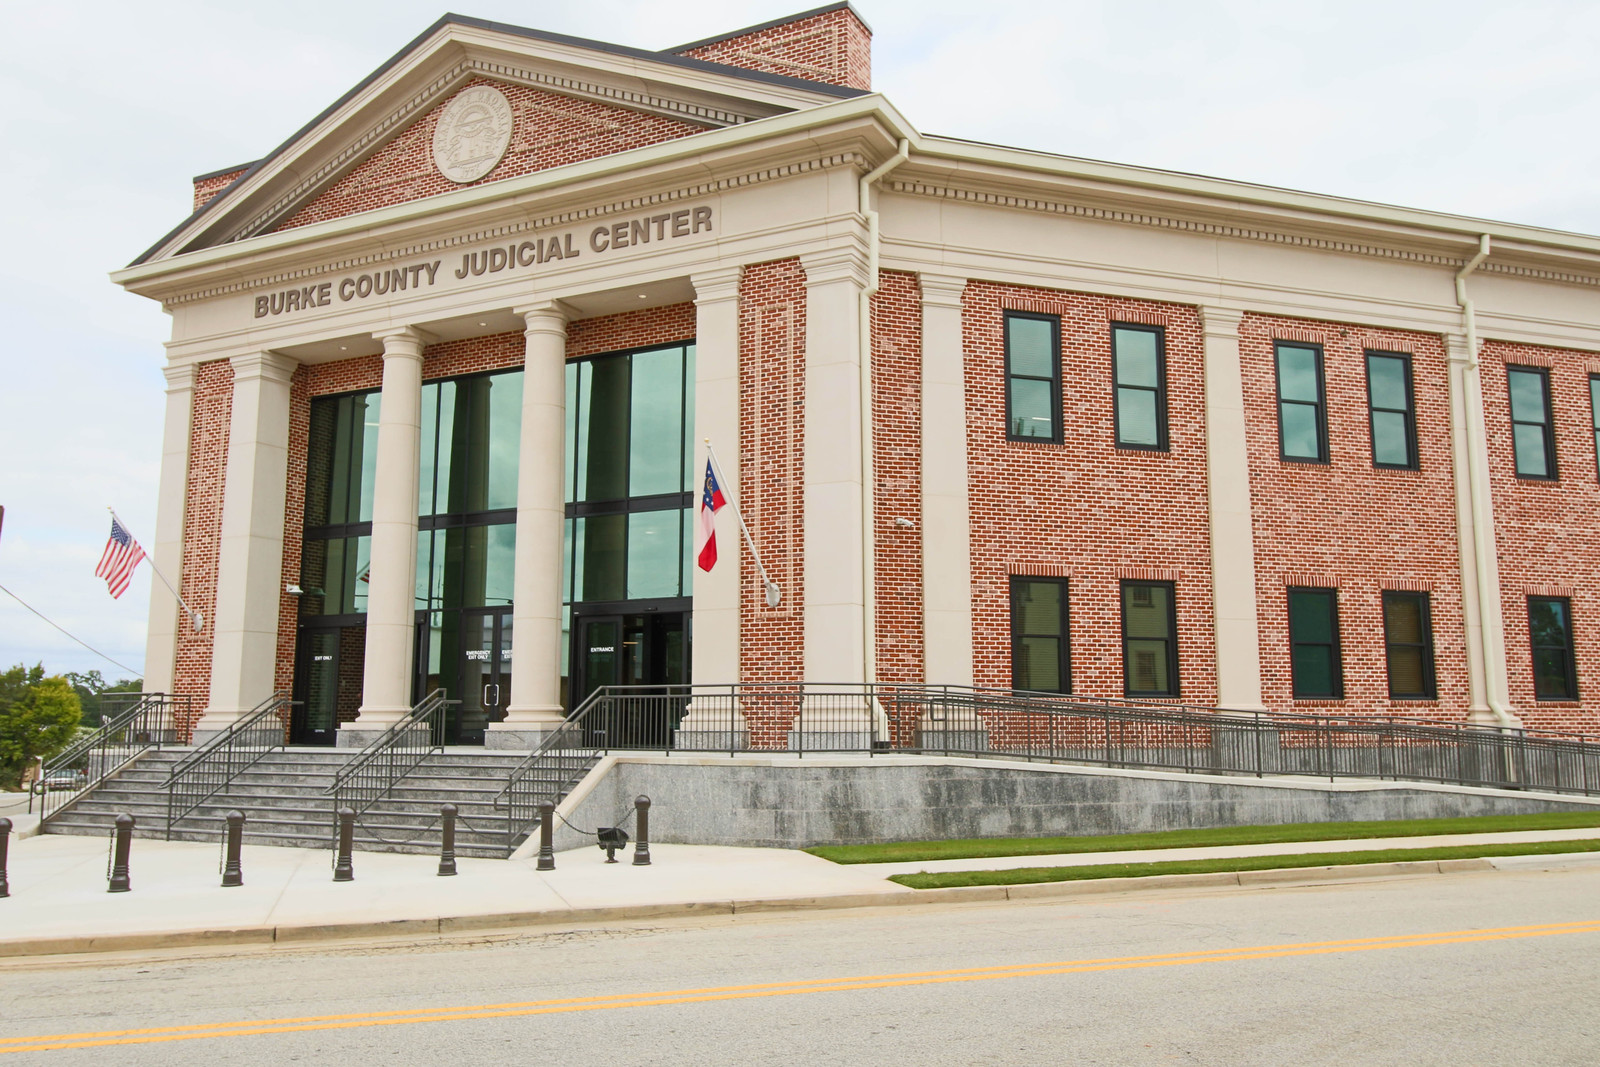 Burke County Judicial Center 